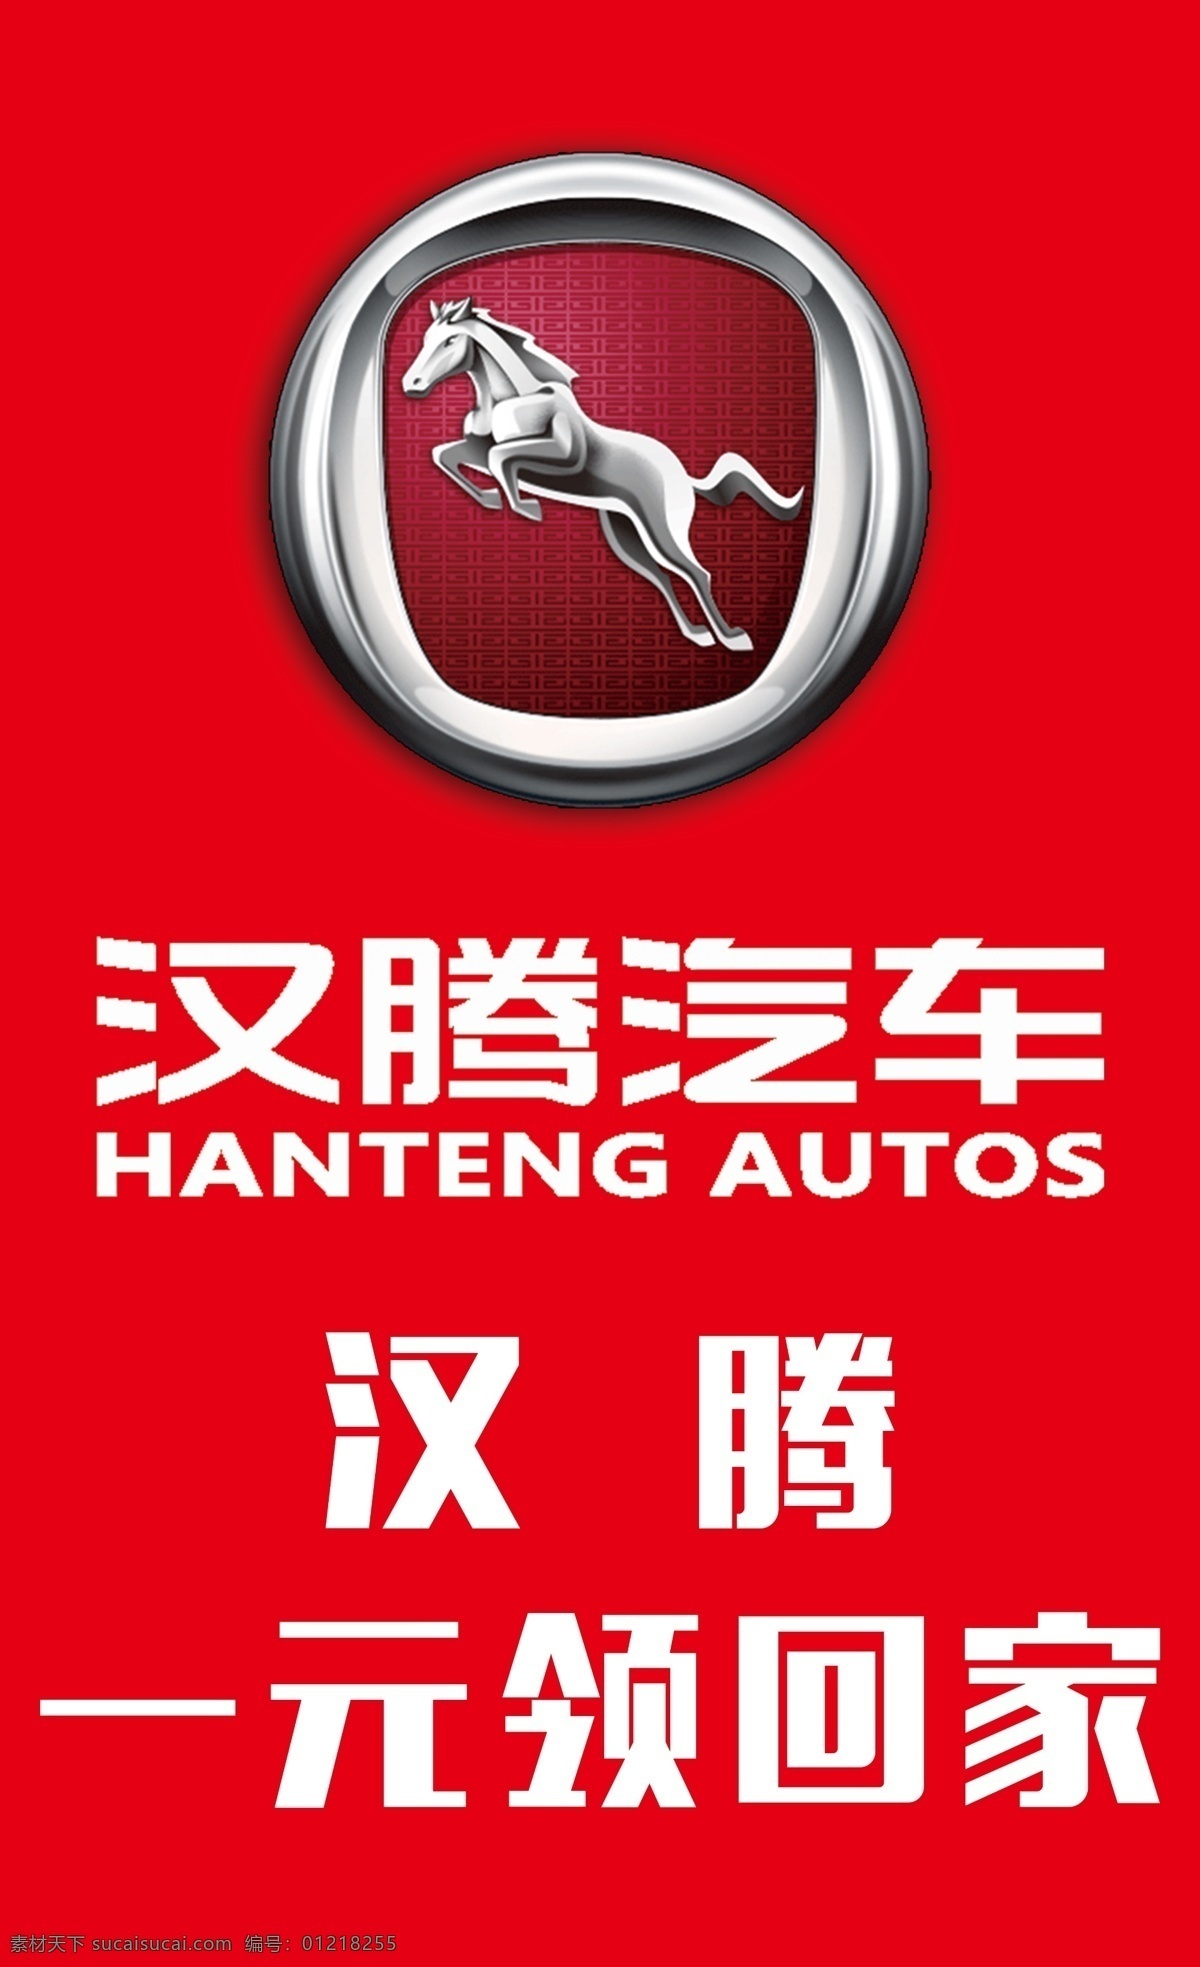 汉腾 汽车 贵阳 贵州 车展 车顶牌 x5 广告 平面 报价 价格 会展 汽车类